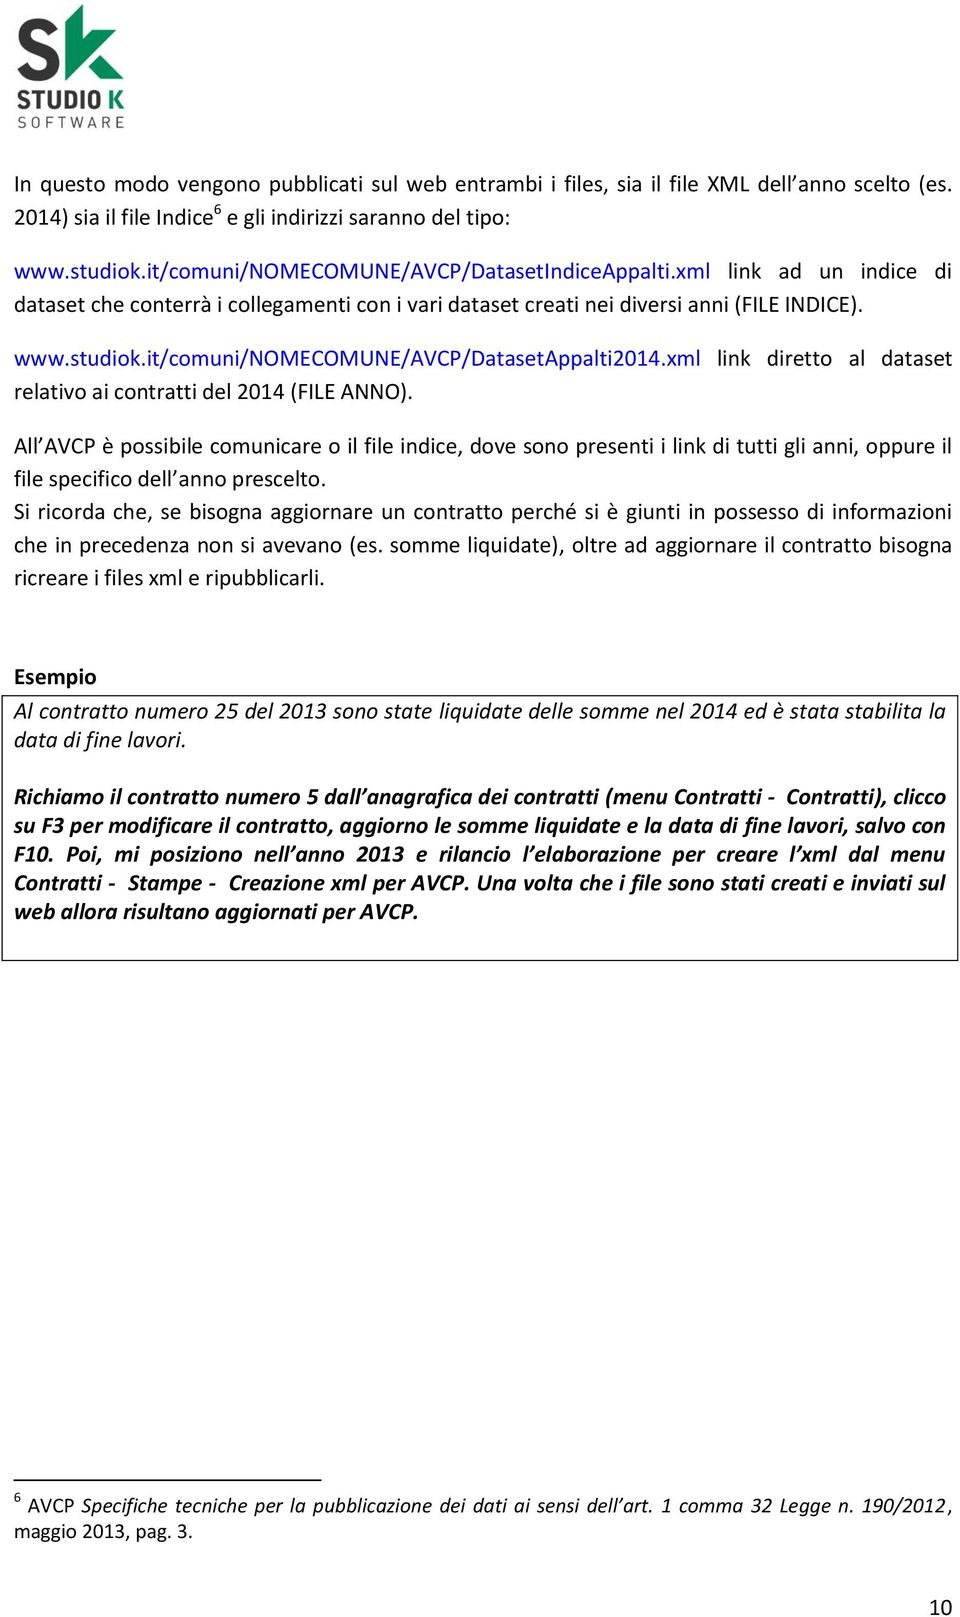 it/comuni/nomecomune/avcp/datasetappalti2014.xml link diretto al dataset relativo ai contratti del 2014 (FILE ANNO).